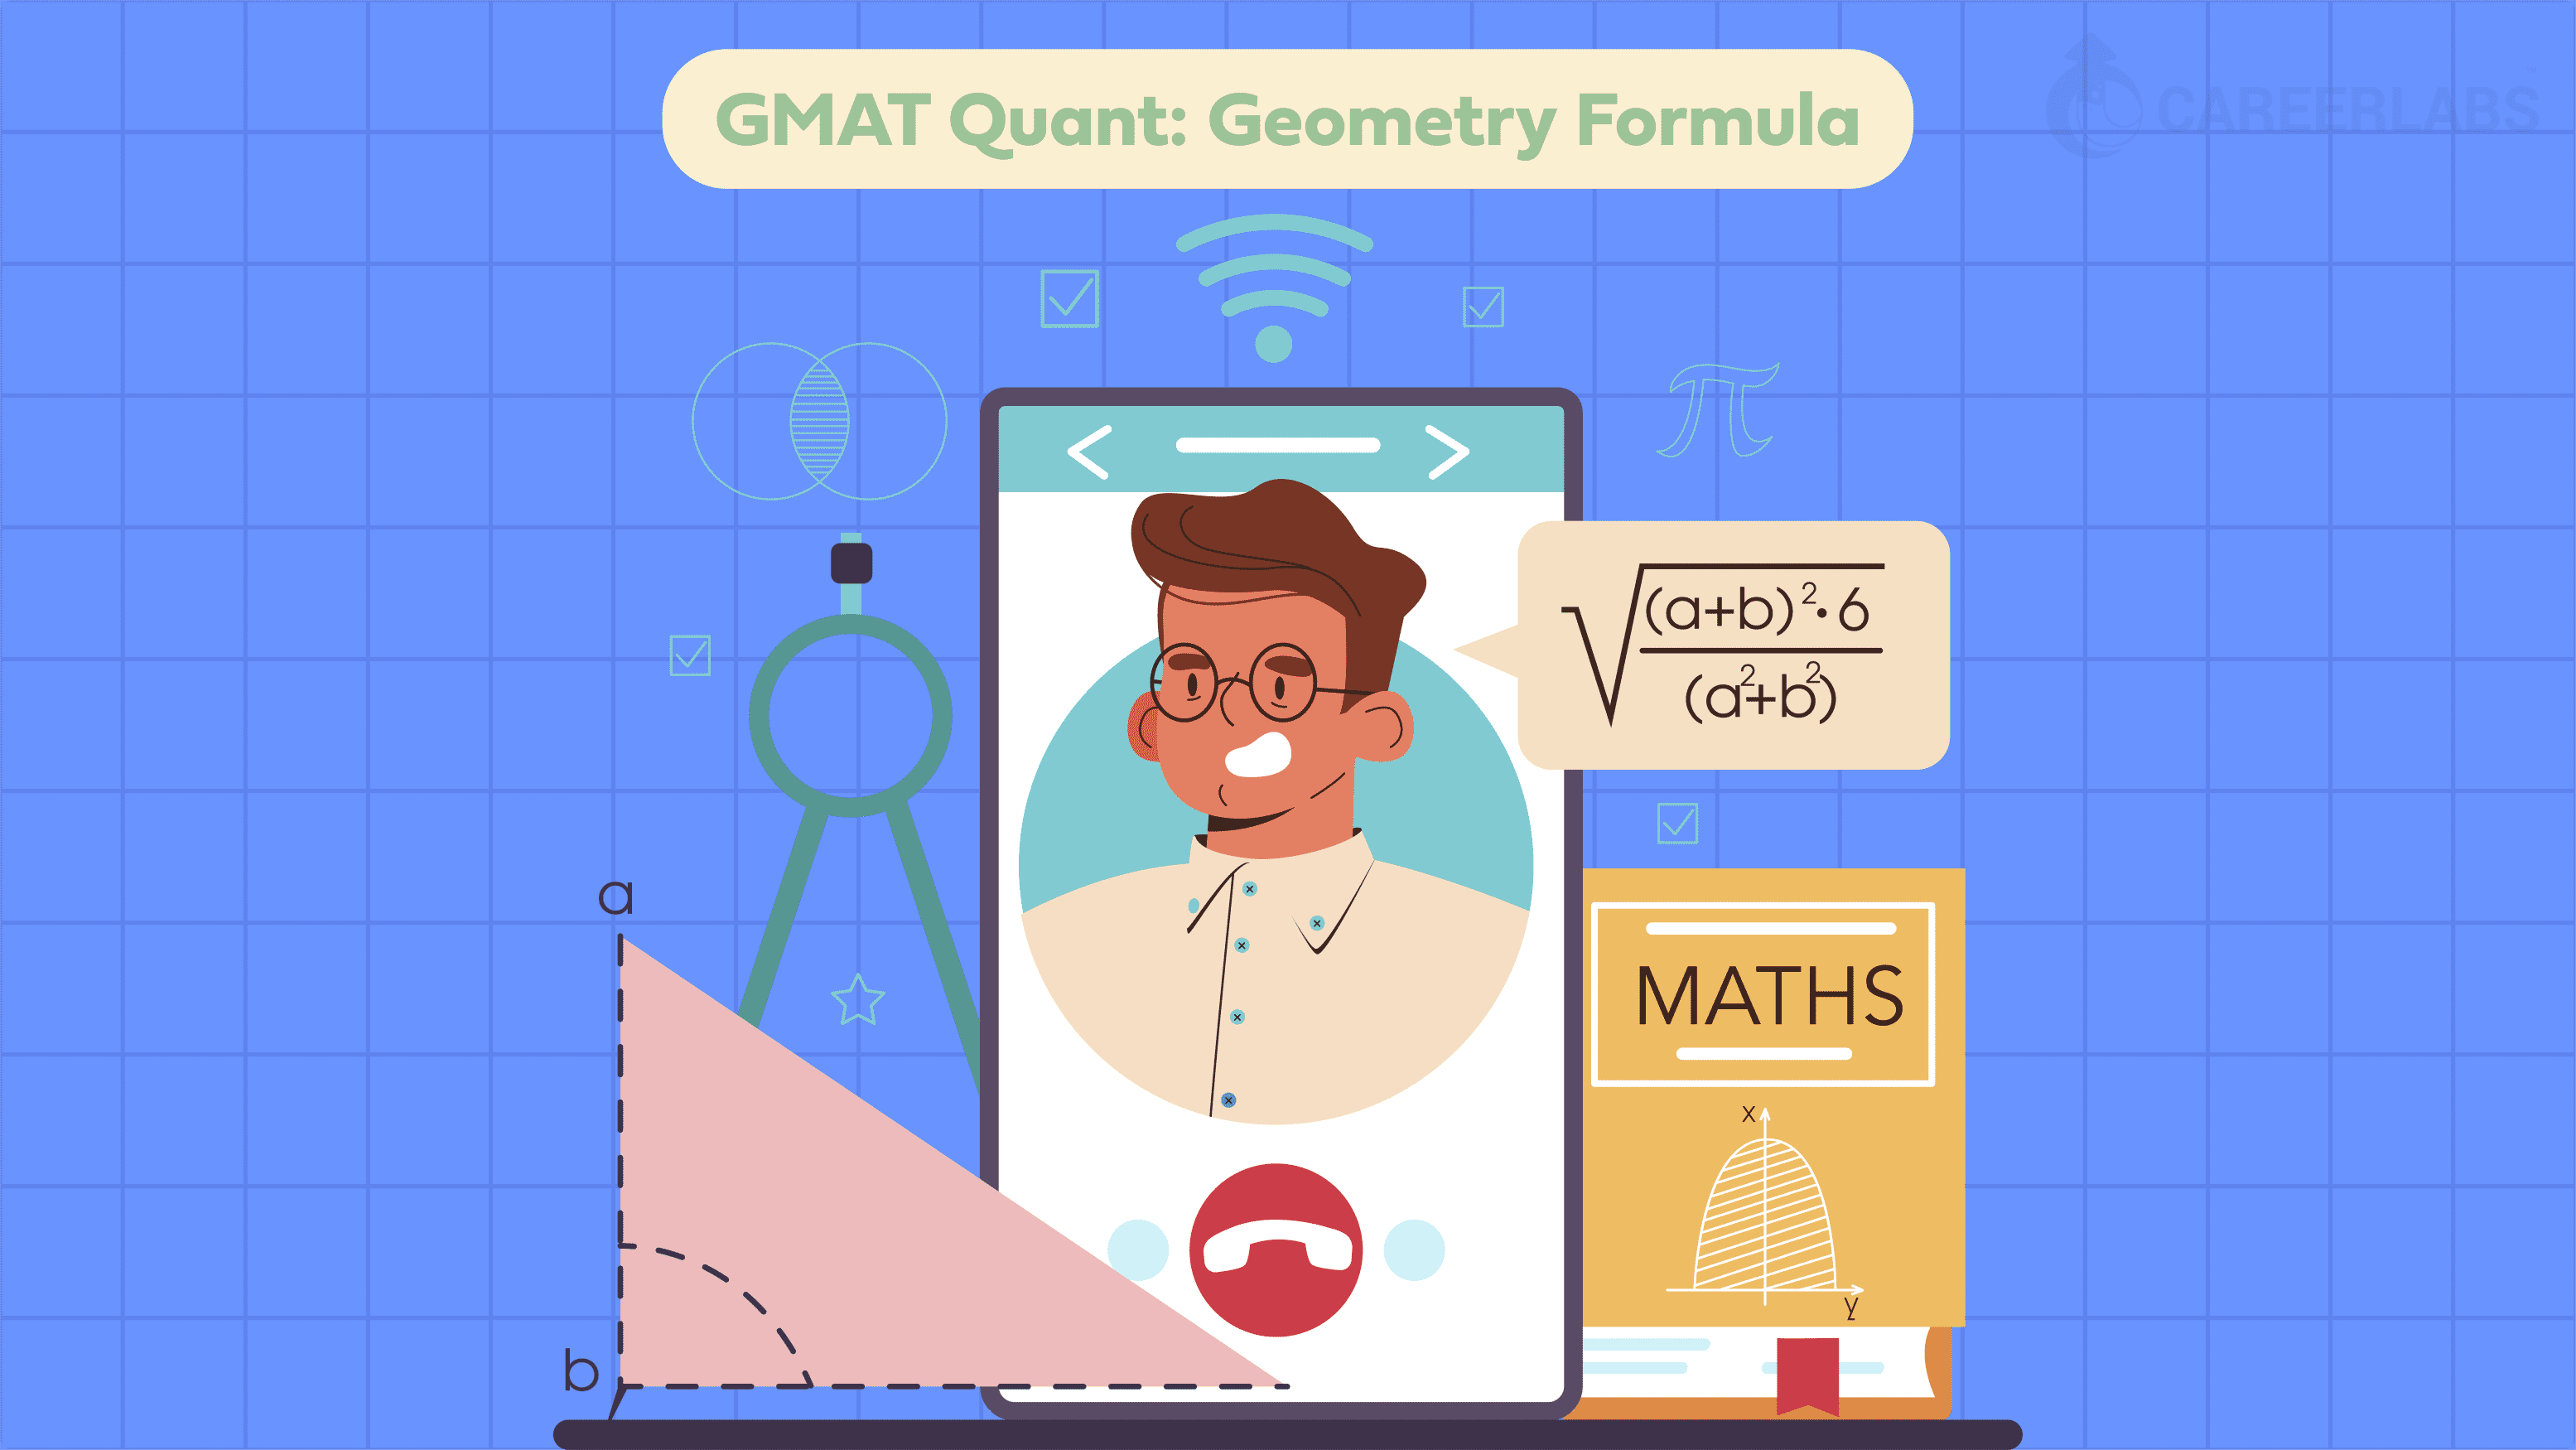 GMAT Quant: Geometry Formula